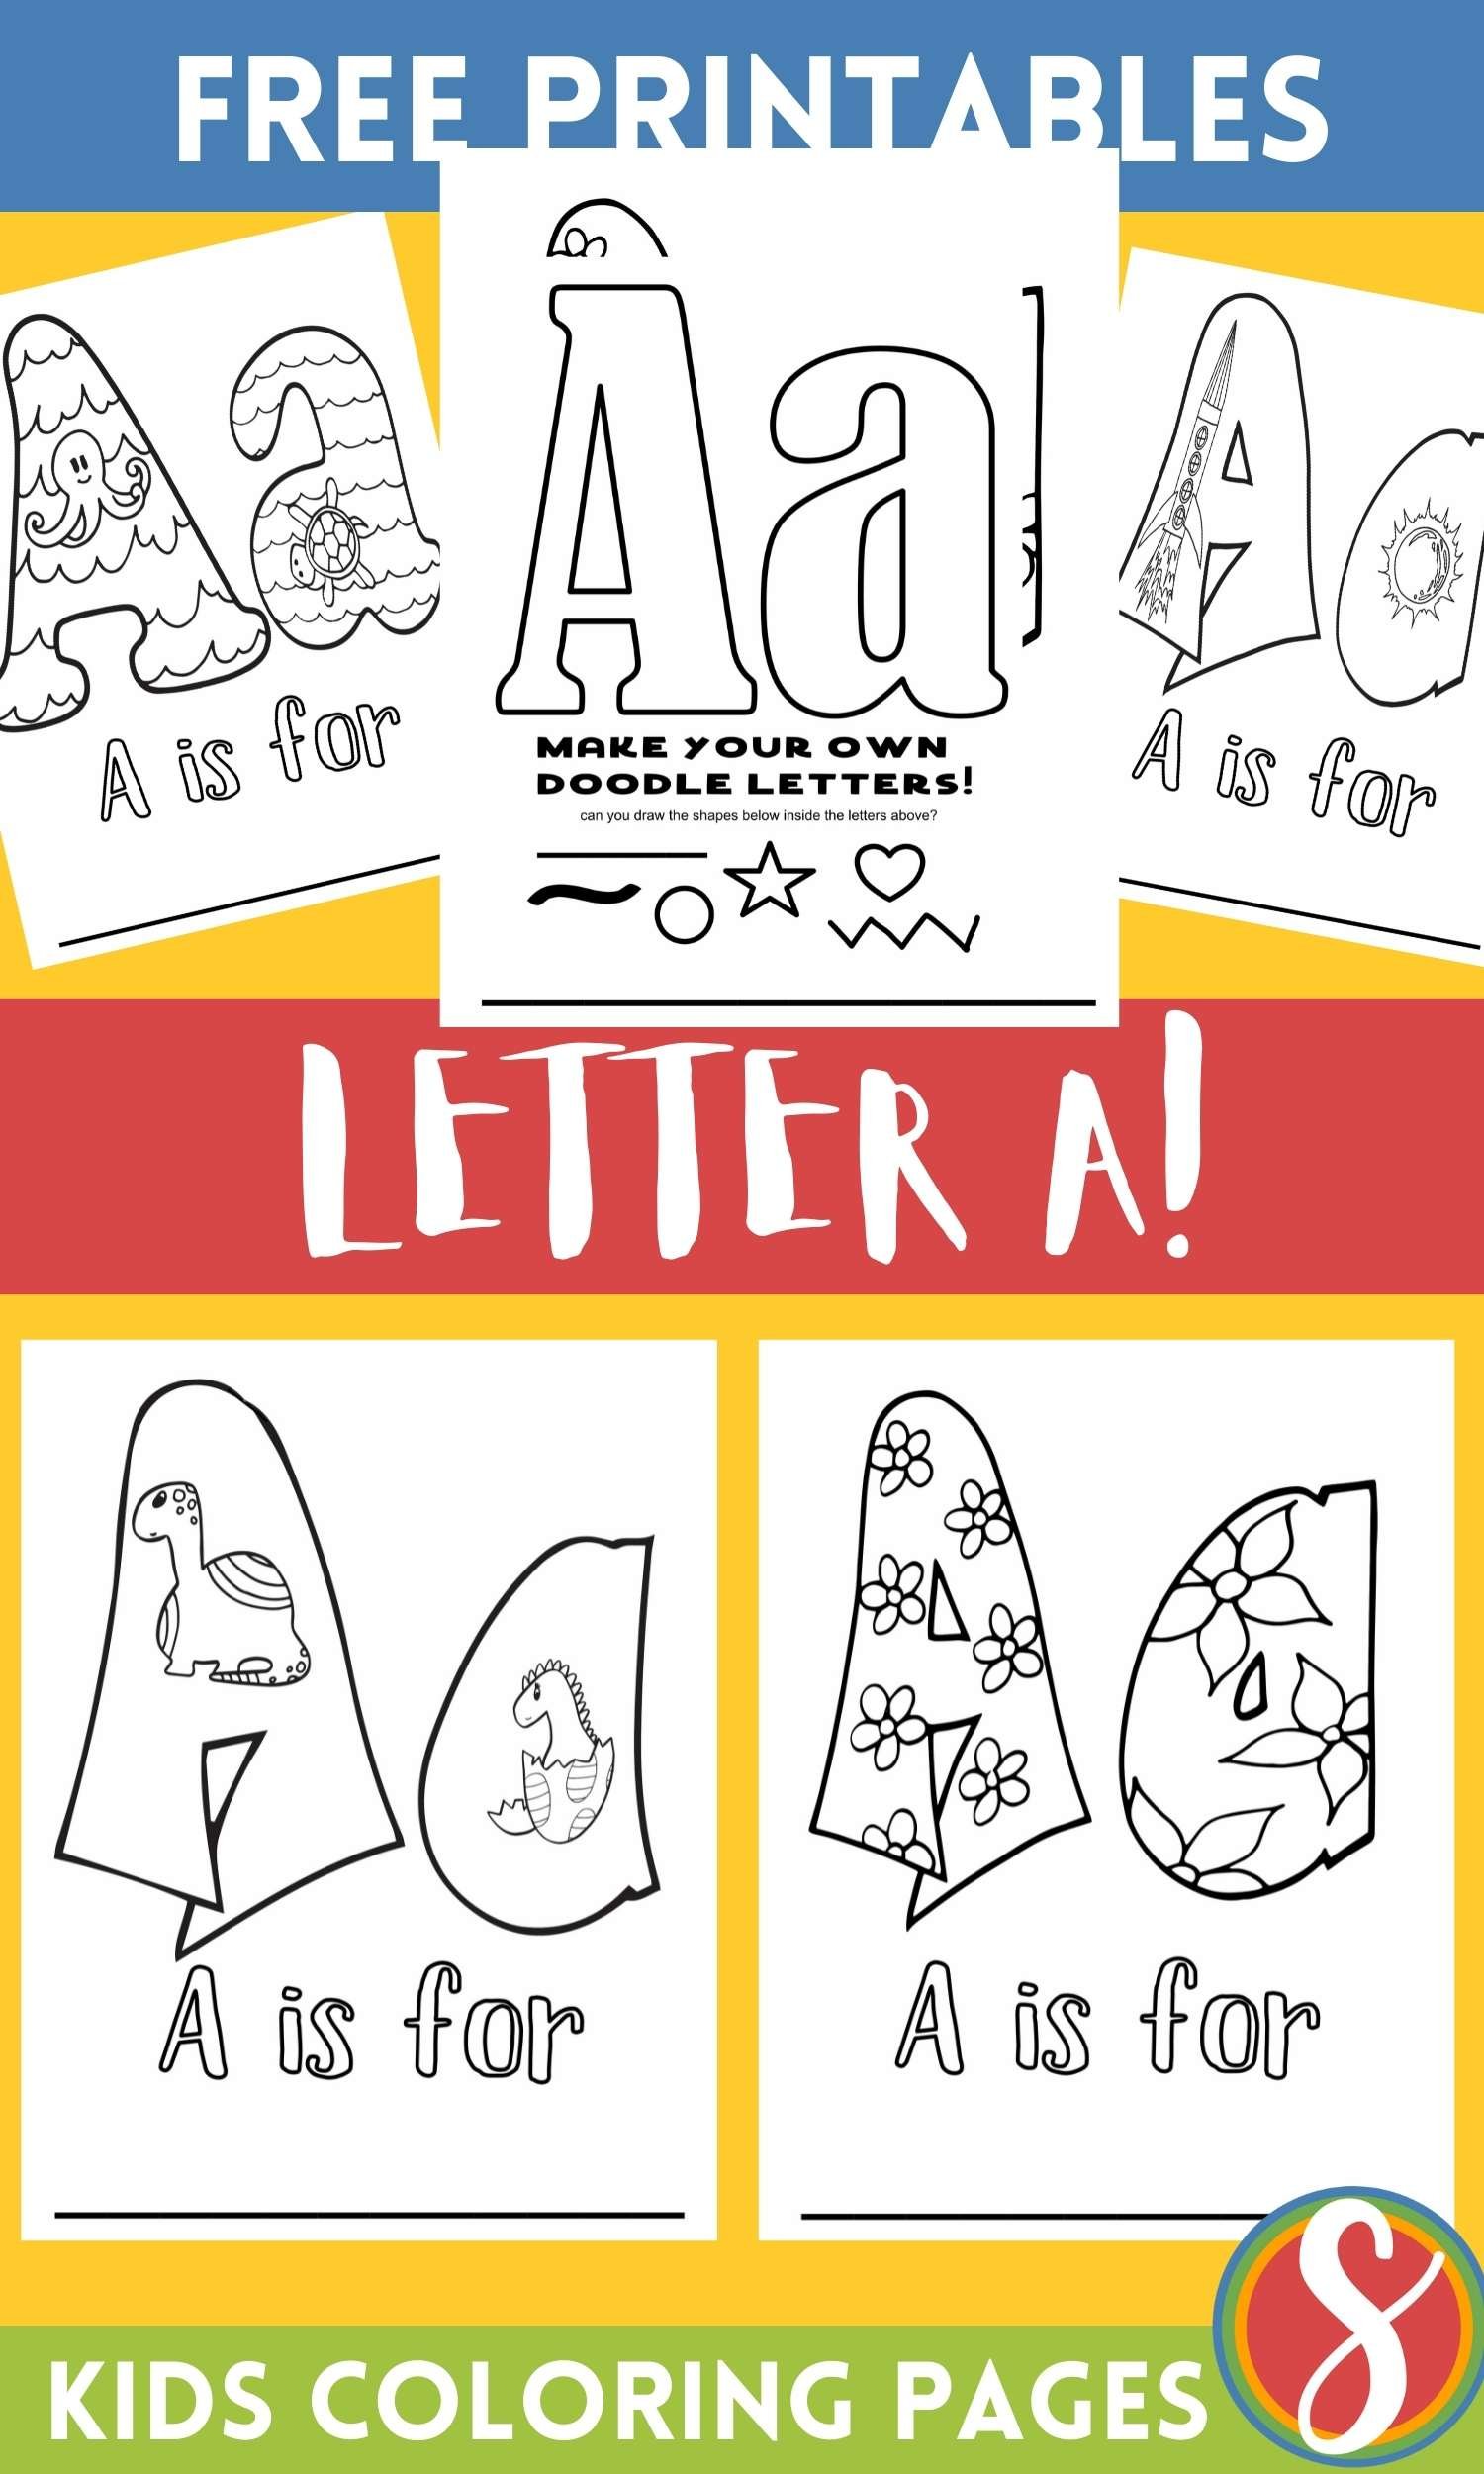 Free letter a coloring pages â stevie doodles